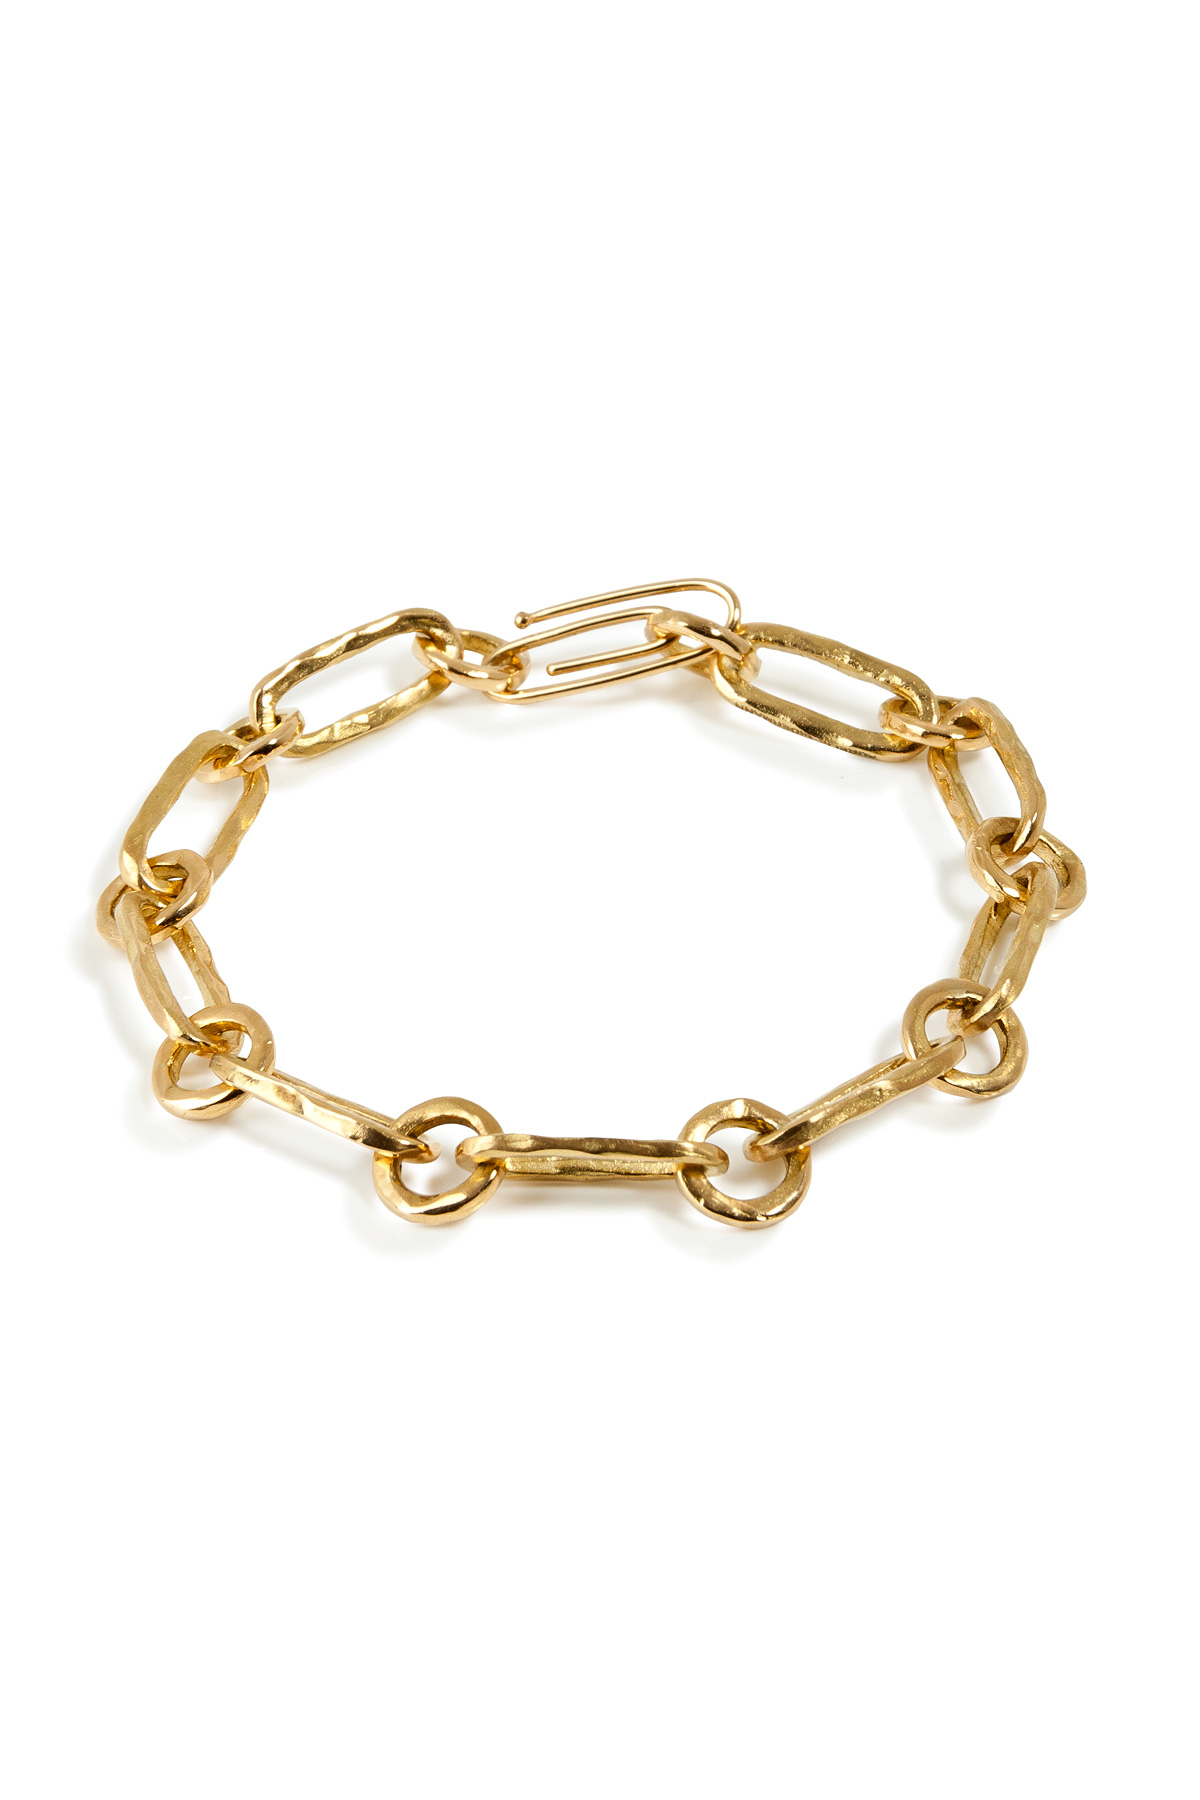 Aurelie bidermann Yellow Gold Hammered Chain Bracelet in Metallic | Lyst